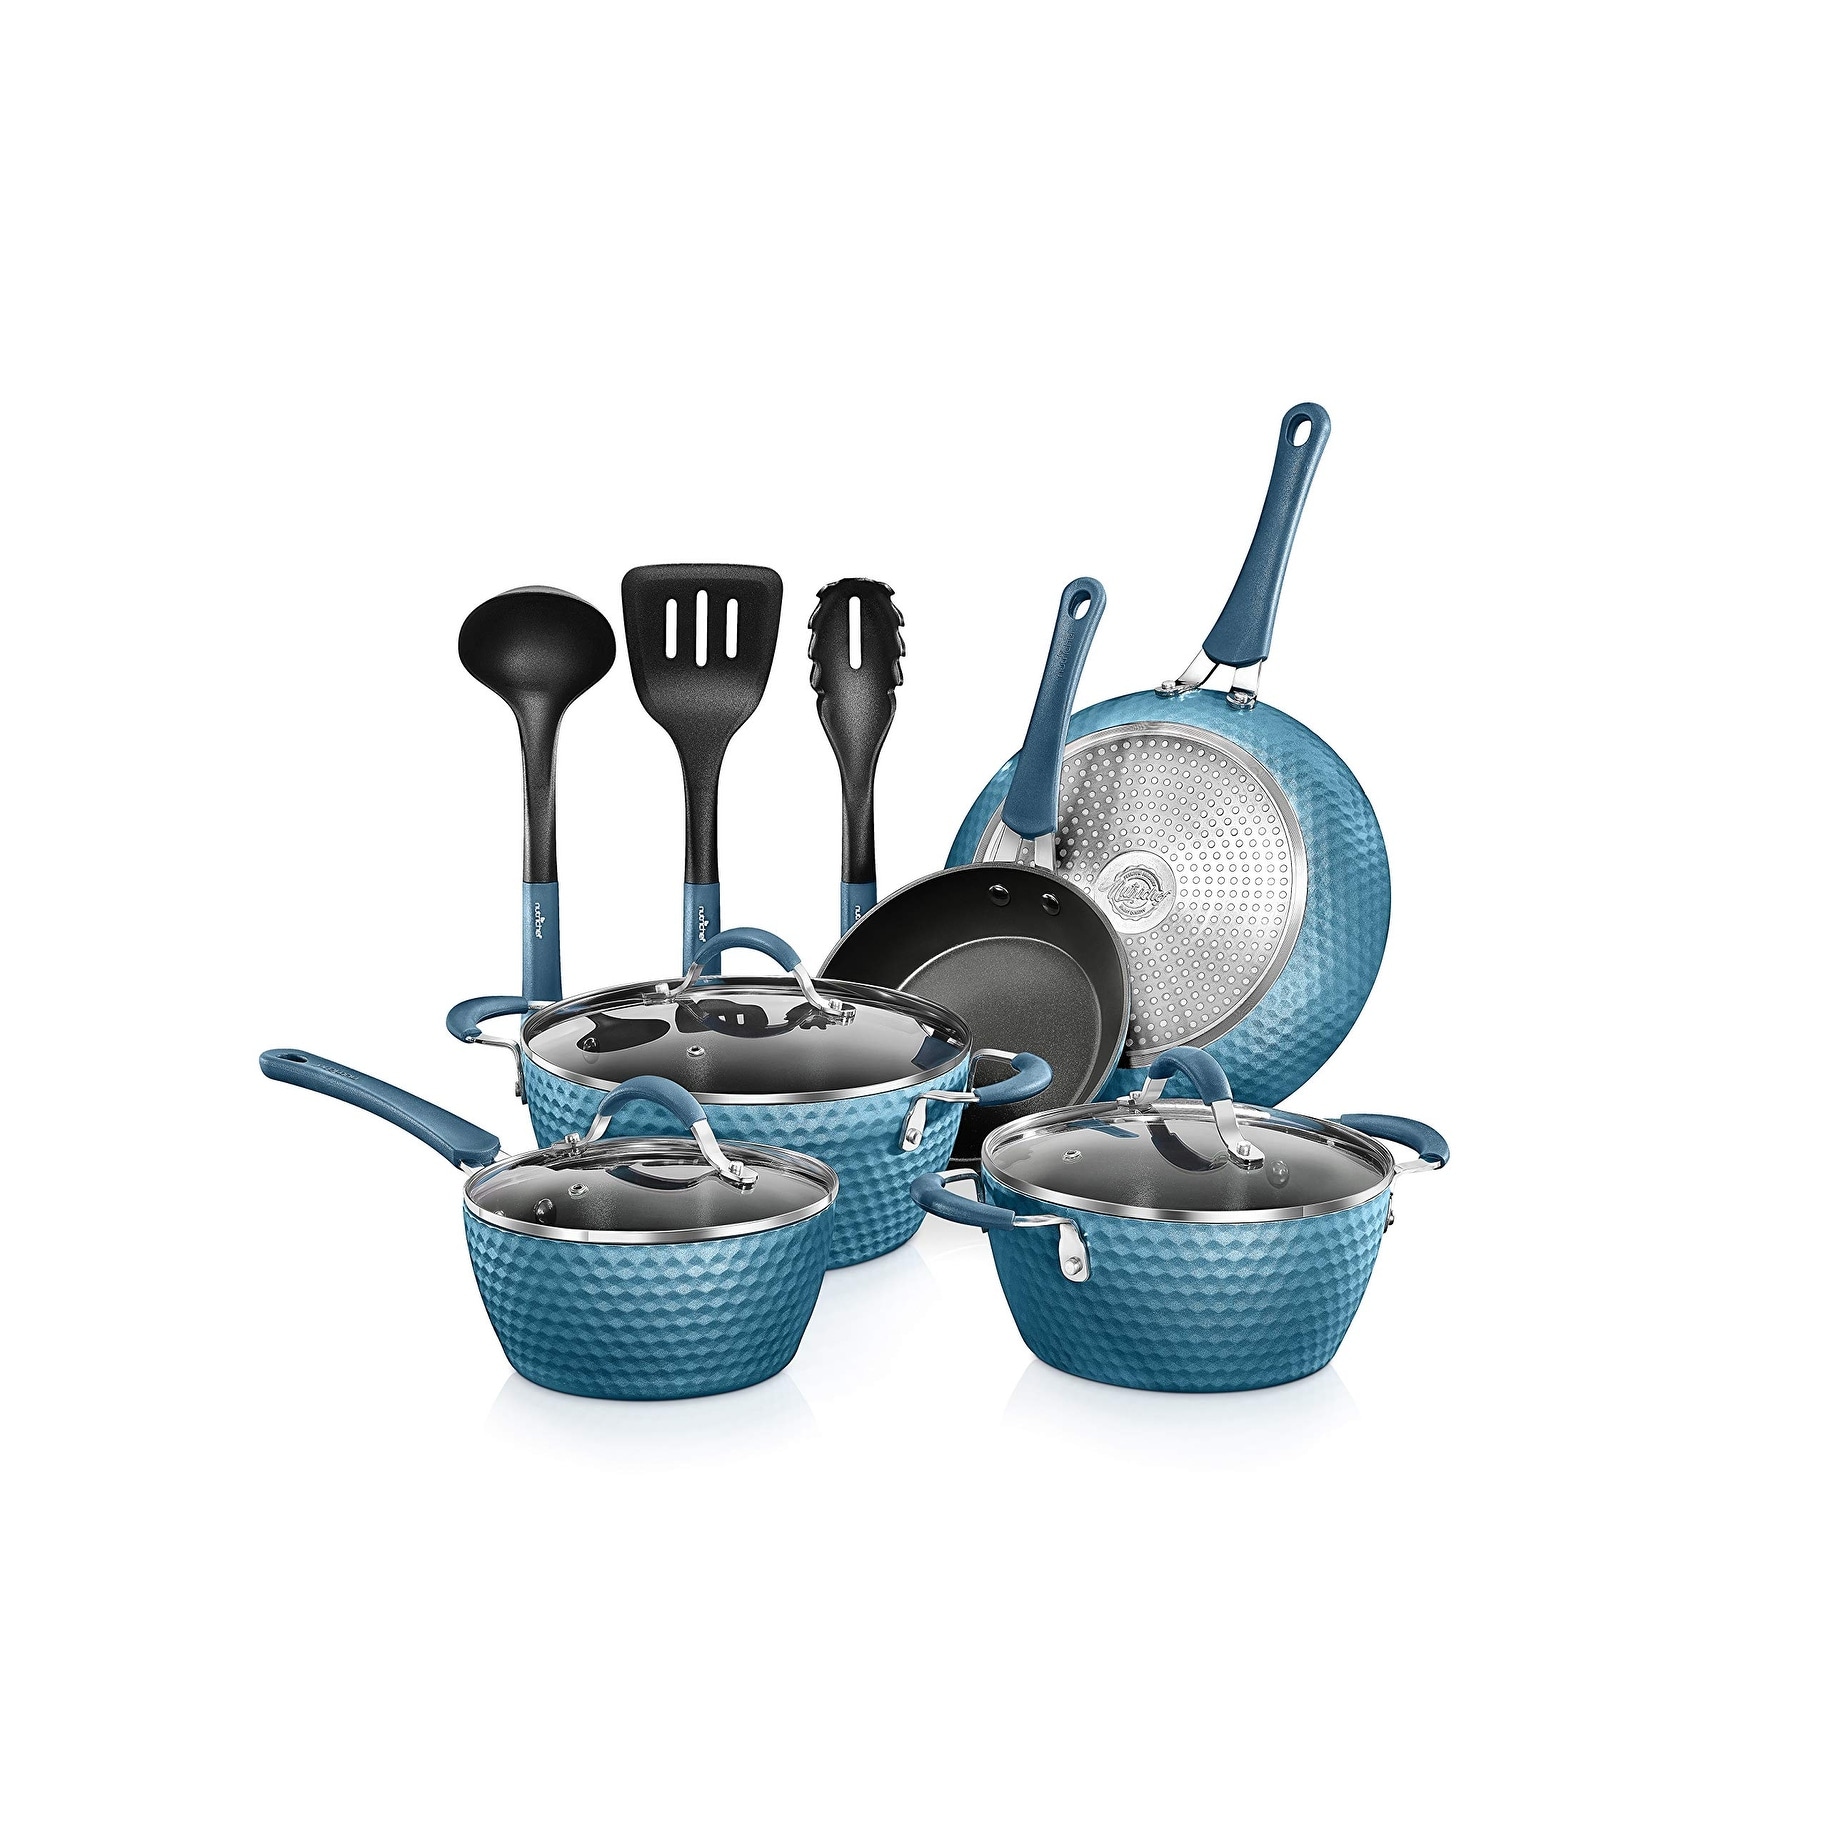 https://ak1.ostkcdn.com/images/products/is/images/direct/711d6c953107e0591b949177e9243e09bbbc29e9/Cookware-Home-Kitchen-Ware-Pots-%26-Pan-Set-with-Saucepan%2C-Frying-Pans%2C-Cooking-Pots%2C-Lids%2C-11-Pcs.jpg